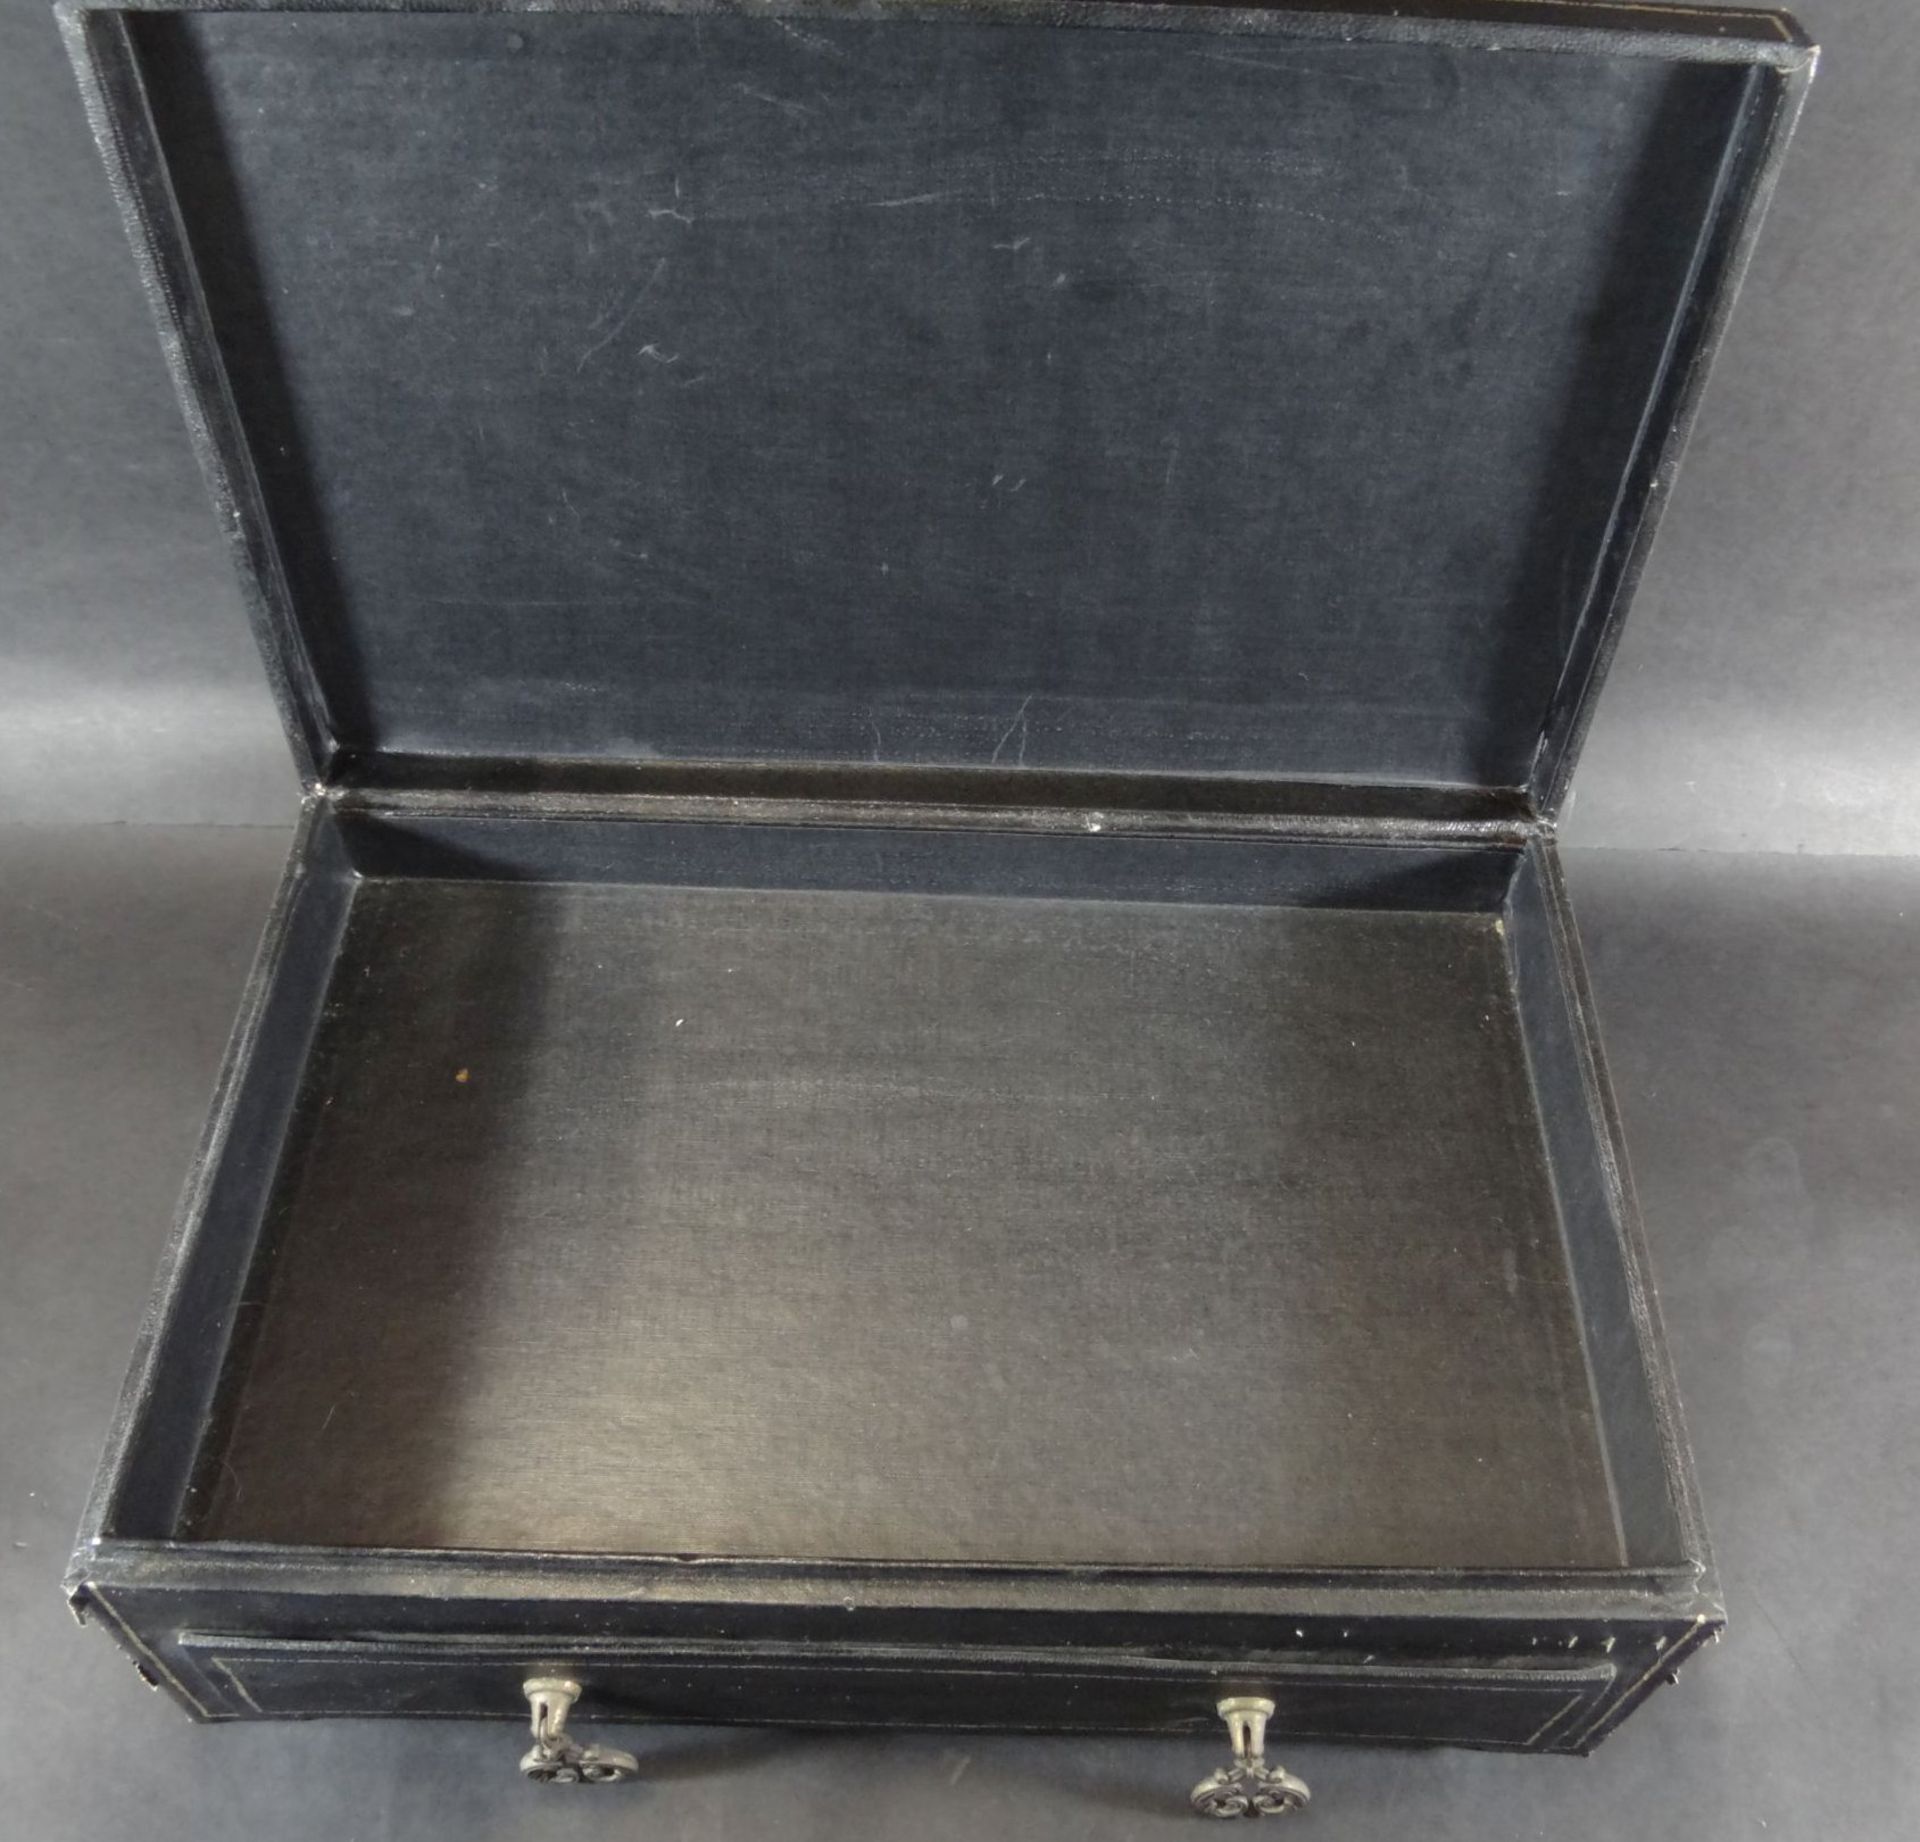 gr. Pappmachee-Kasten mit Schublade, seitl. Griffe, Alters-u. Gebrauchsspuren, H-17 cm, 40x25 - Bild 3 aus 5